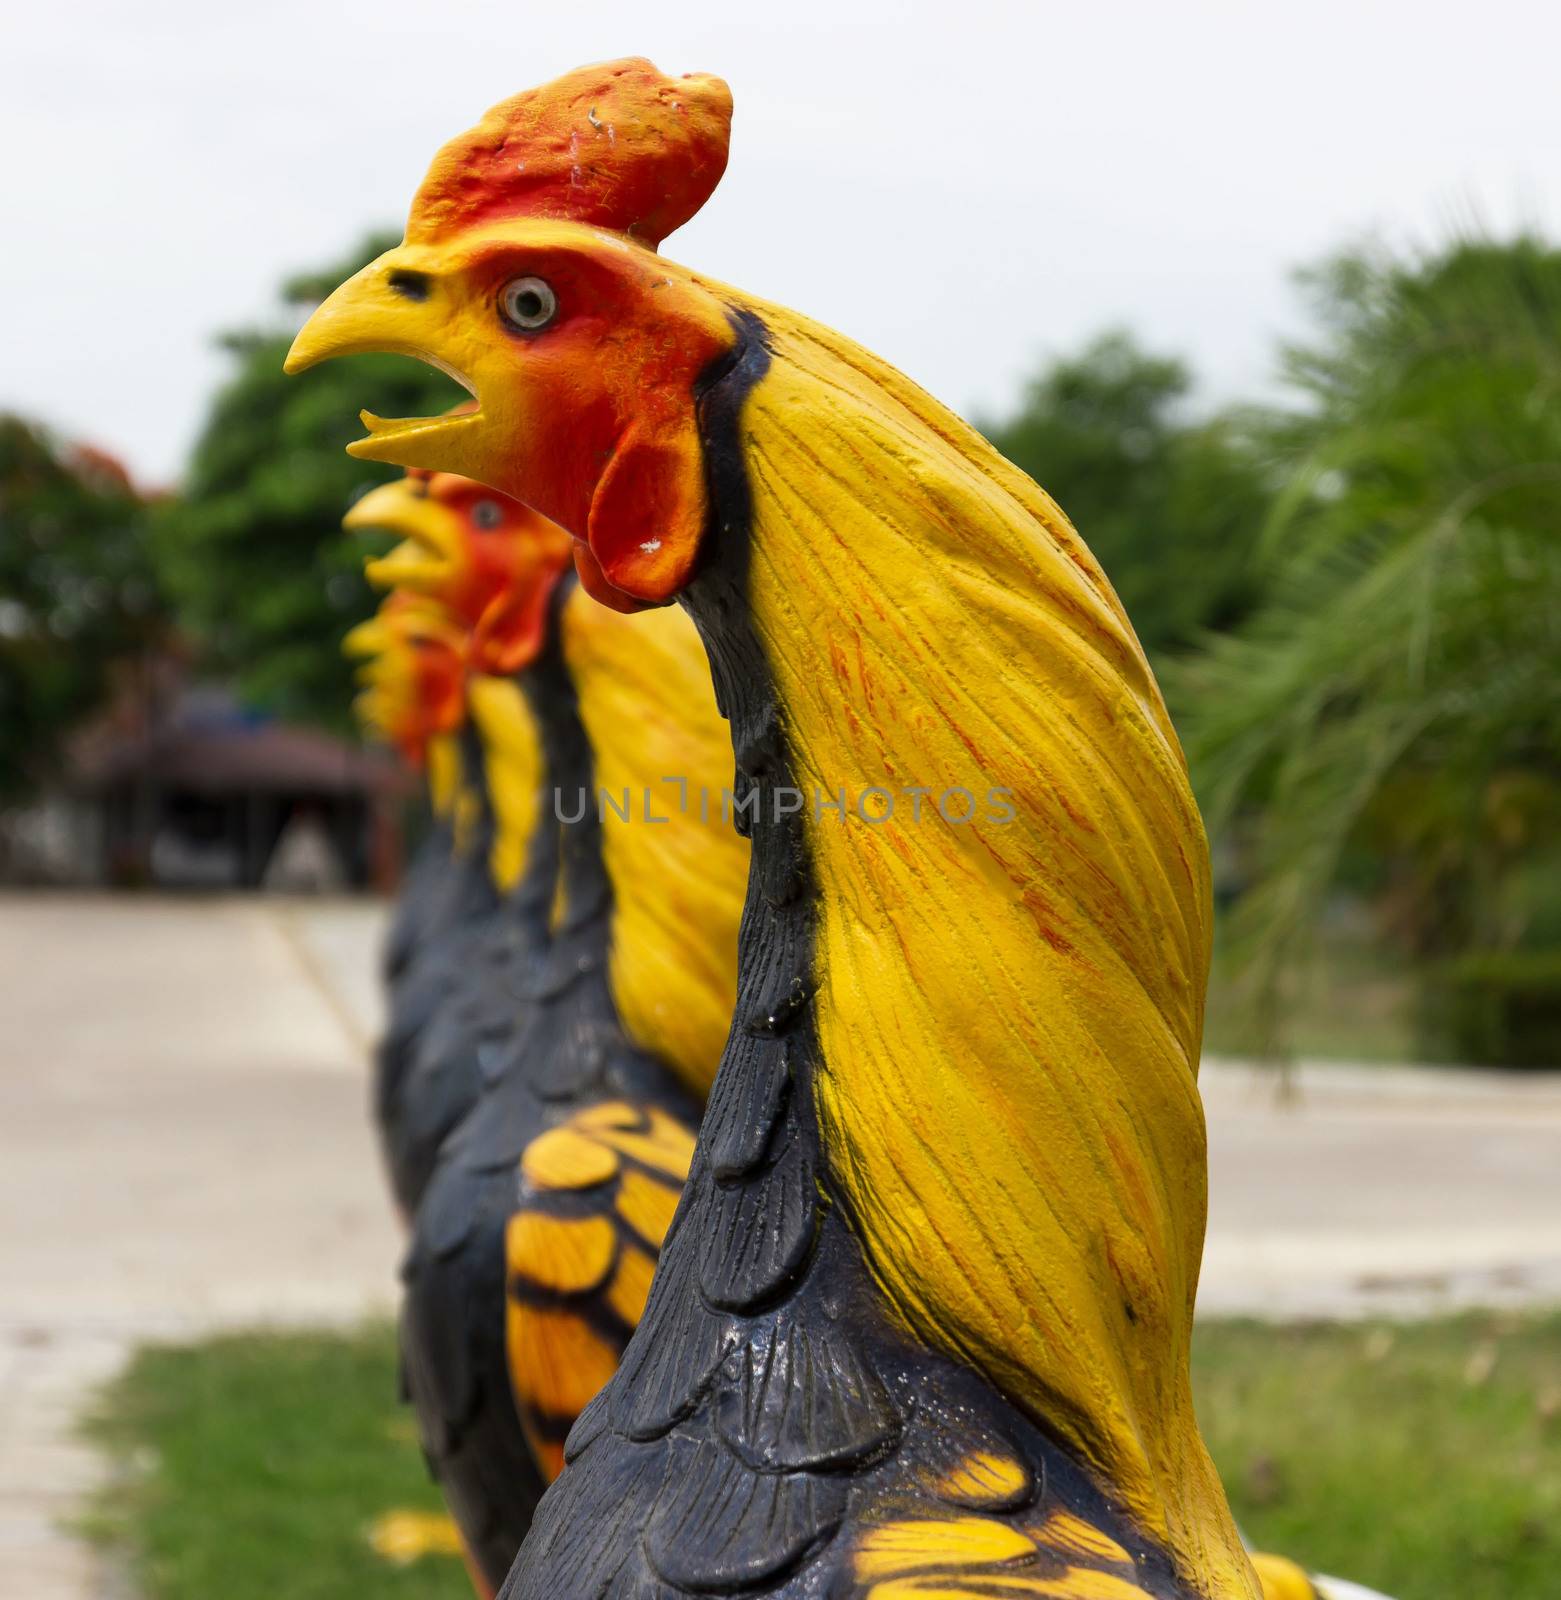 Chicken model, decorated in a garden by sutipp11